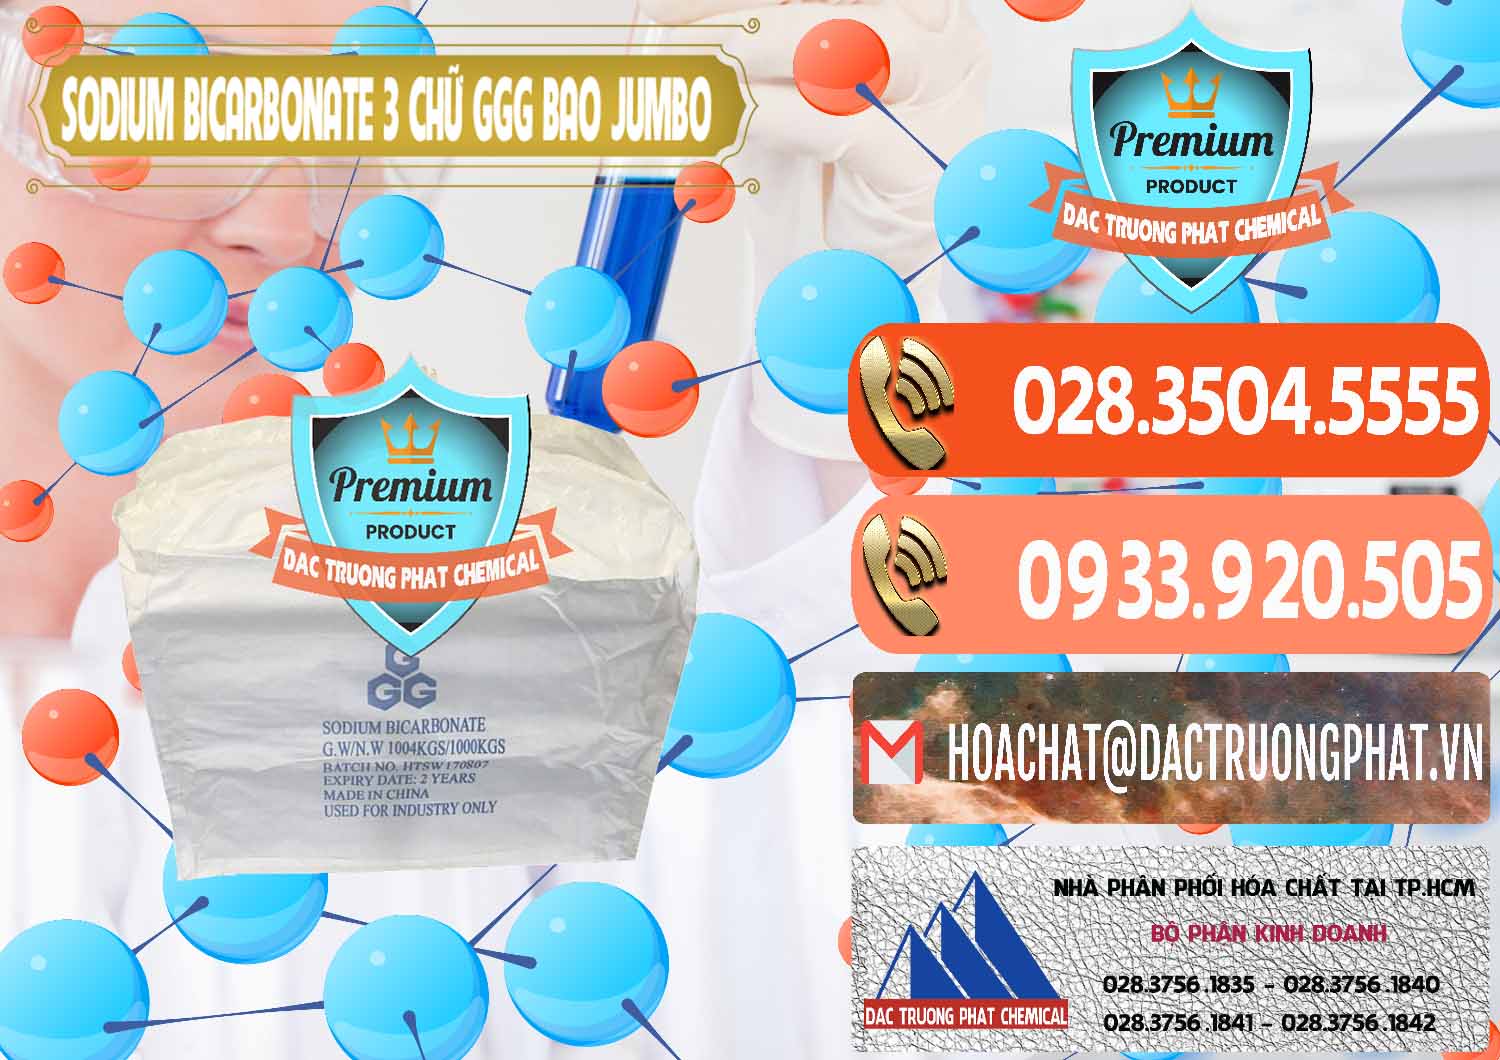 Cty bán & cung ứng Sodium Bicarbonate – Bicar NaHCO3 Food Grade 3 Chữ GGG Bao Jumbo ( Bành ) Trung Quốc China - 0260 - Nơi bán - cung cấp hóa chất tại TP.HCM - hoachatmientay.com